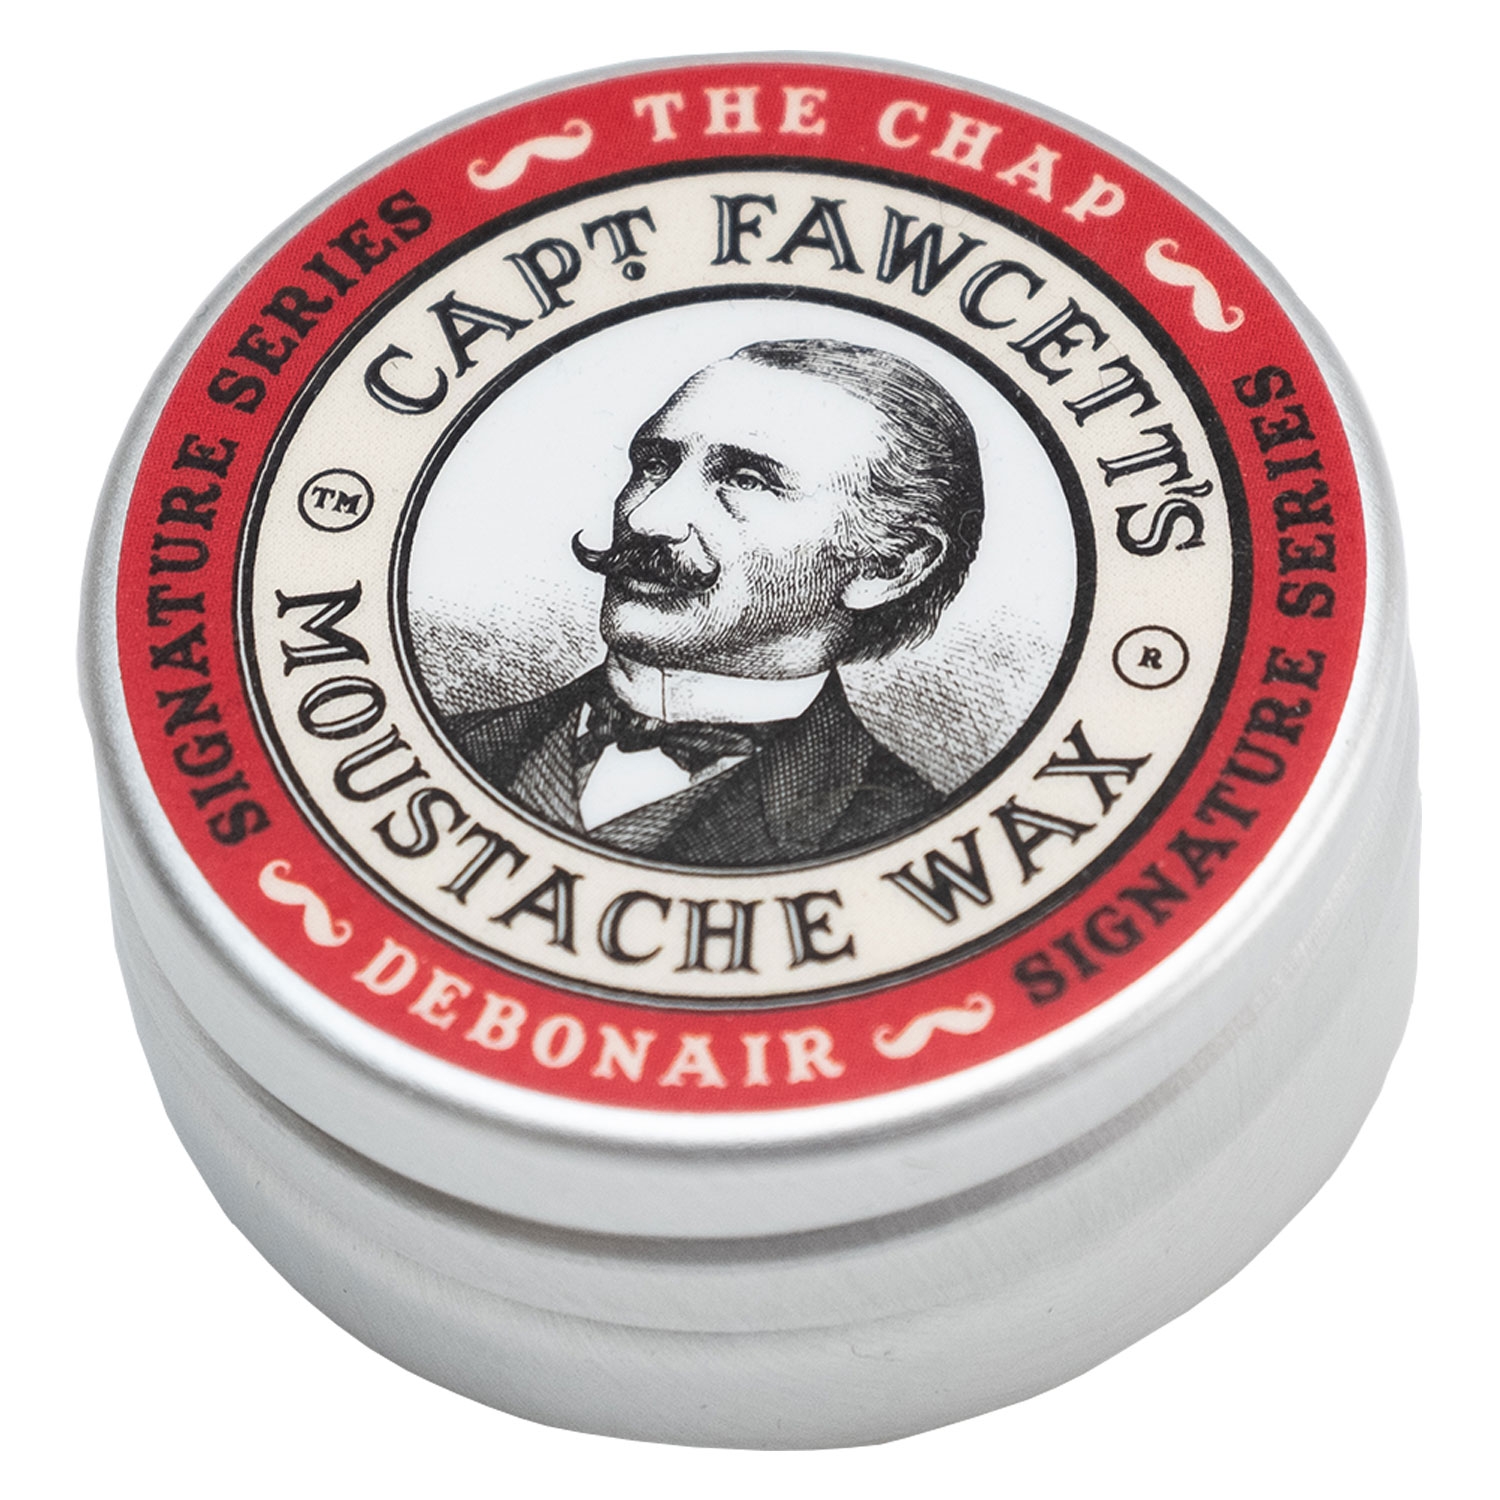 Produktbild von Capt. Fawcett Care - The Chap Debonair Moustache Wax